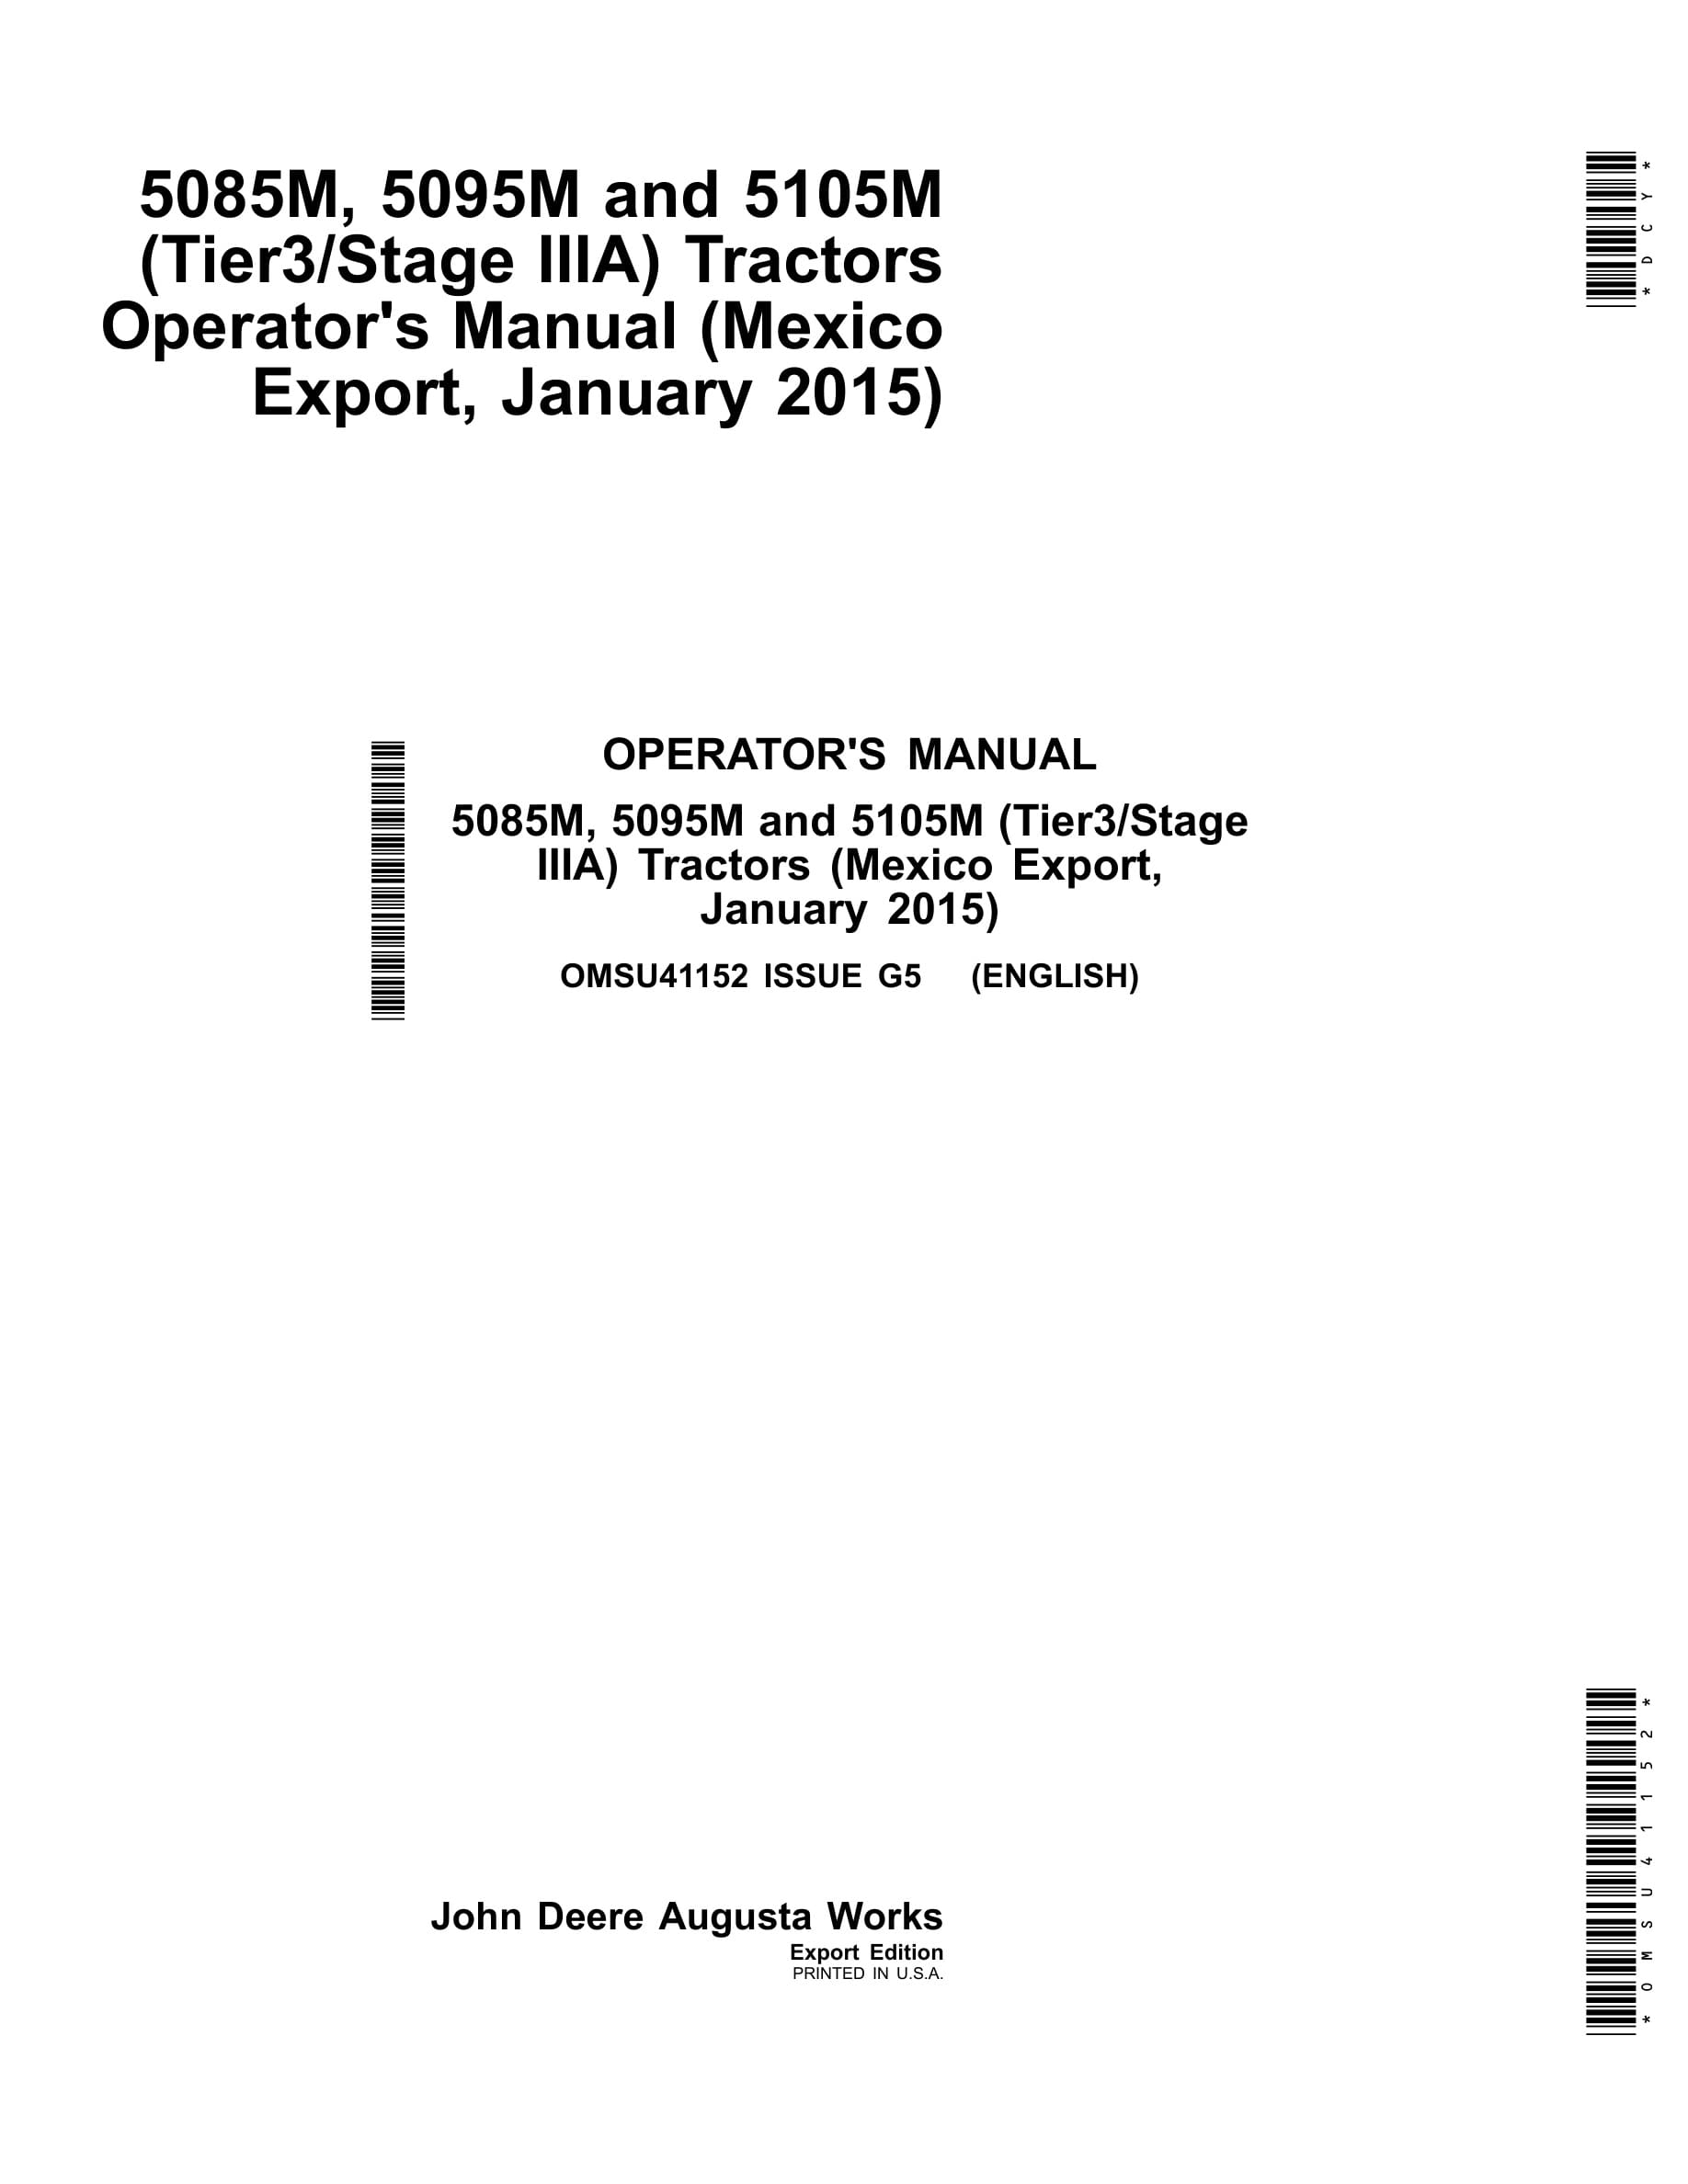 John Deere 5085m, 5095m And 5105m (tier3 Stage Iiia) Tractors Operator Manuals OMSU41152-1